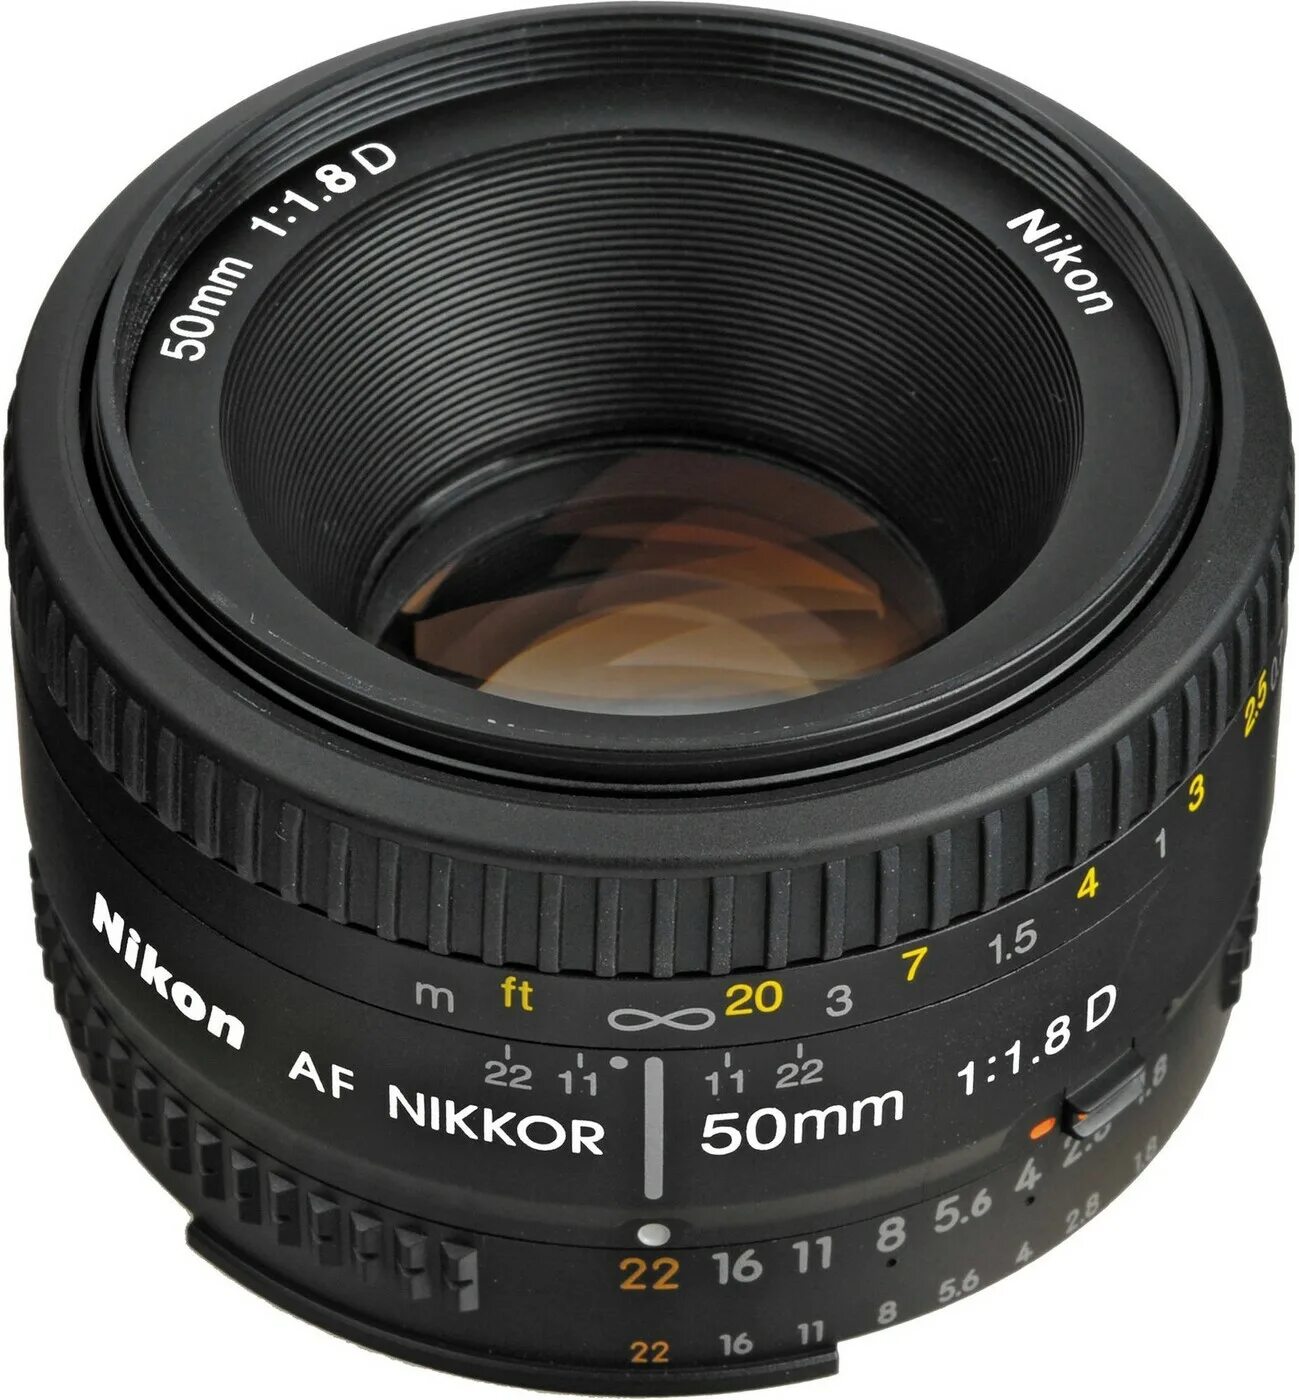 Объектив Nikon 50mm f/1.8d af Nikkor. Af Nikkor 50mm f/1.8d.